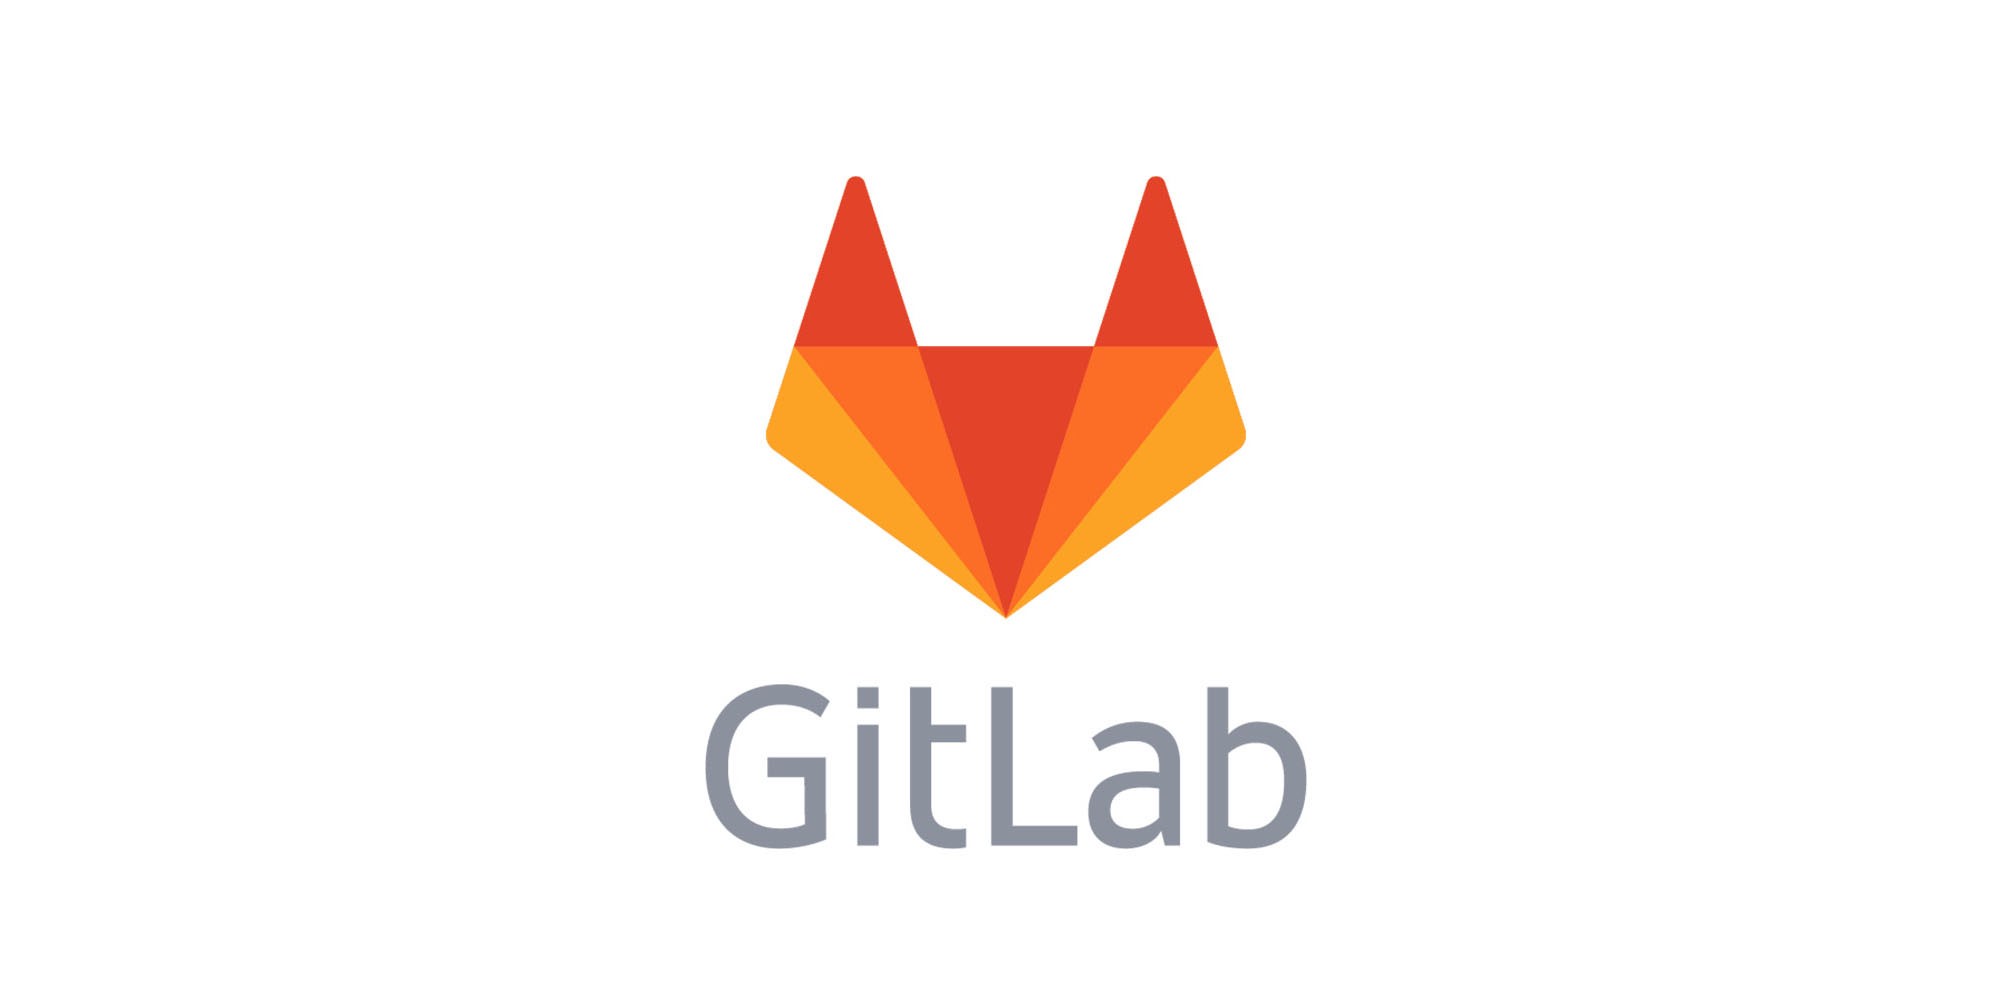 GitLab Drops Bronze/Starter Tier in Pricing Update